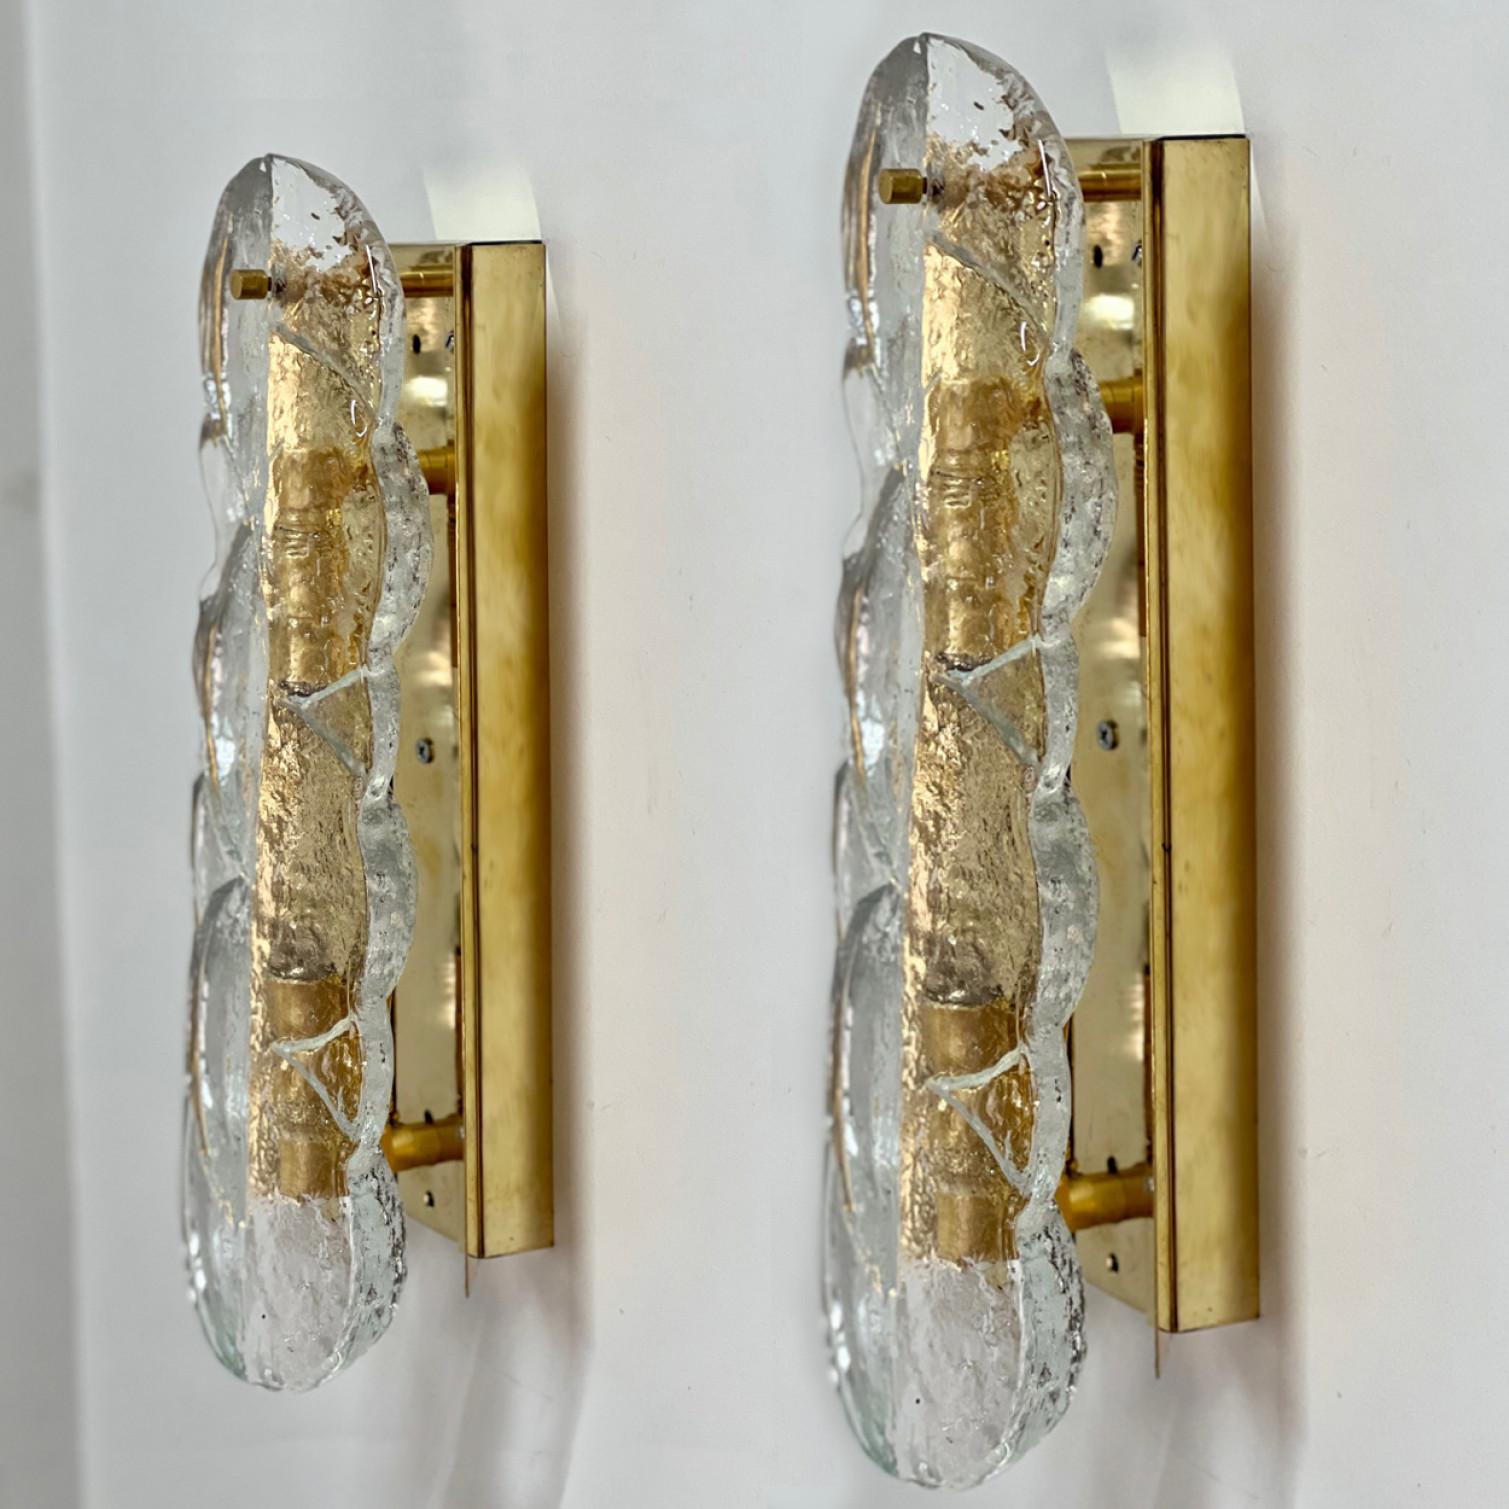 Kalmar swirl Wandleuchten mit klarem Glas in Zitrusform, entworfen und hergestellt in Österreich, Europa von J.T. Kalmar/Kalmar Lighting um 1969. Wunderschönes, dickes, strukturiertes Glas wird durch Messing- und Metallbeschläge vervollständigt.